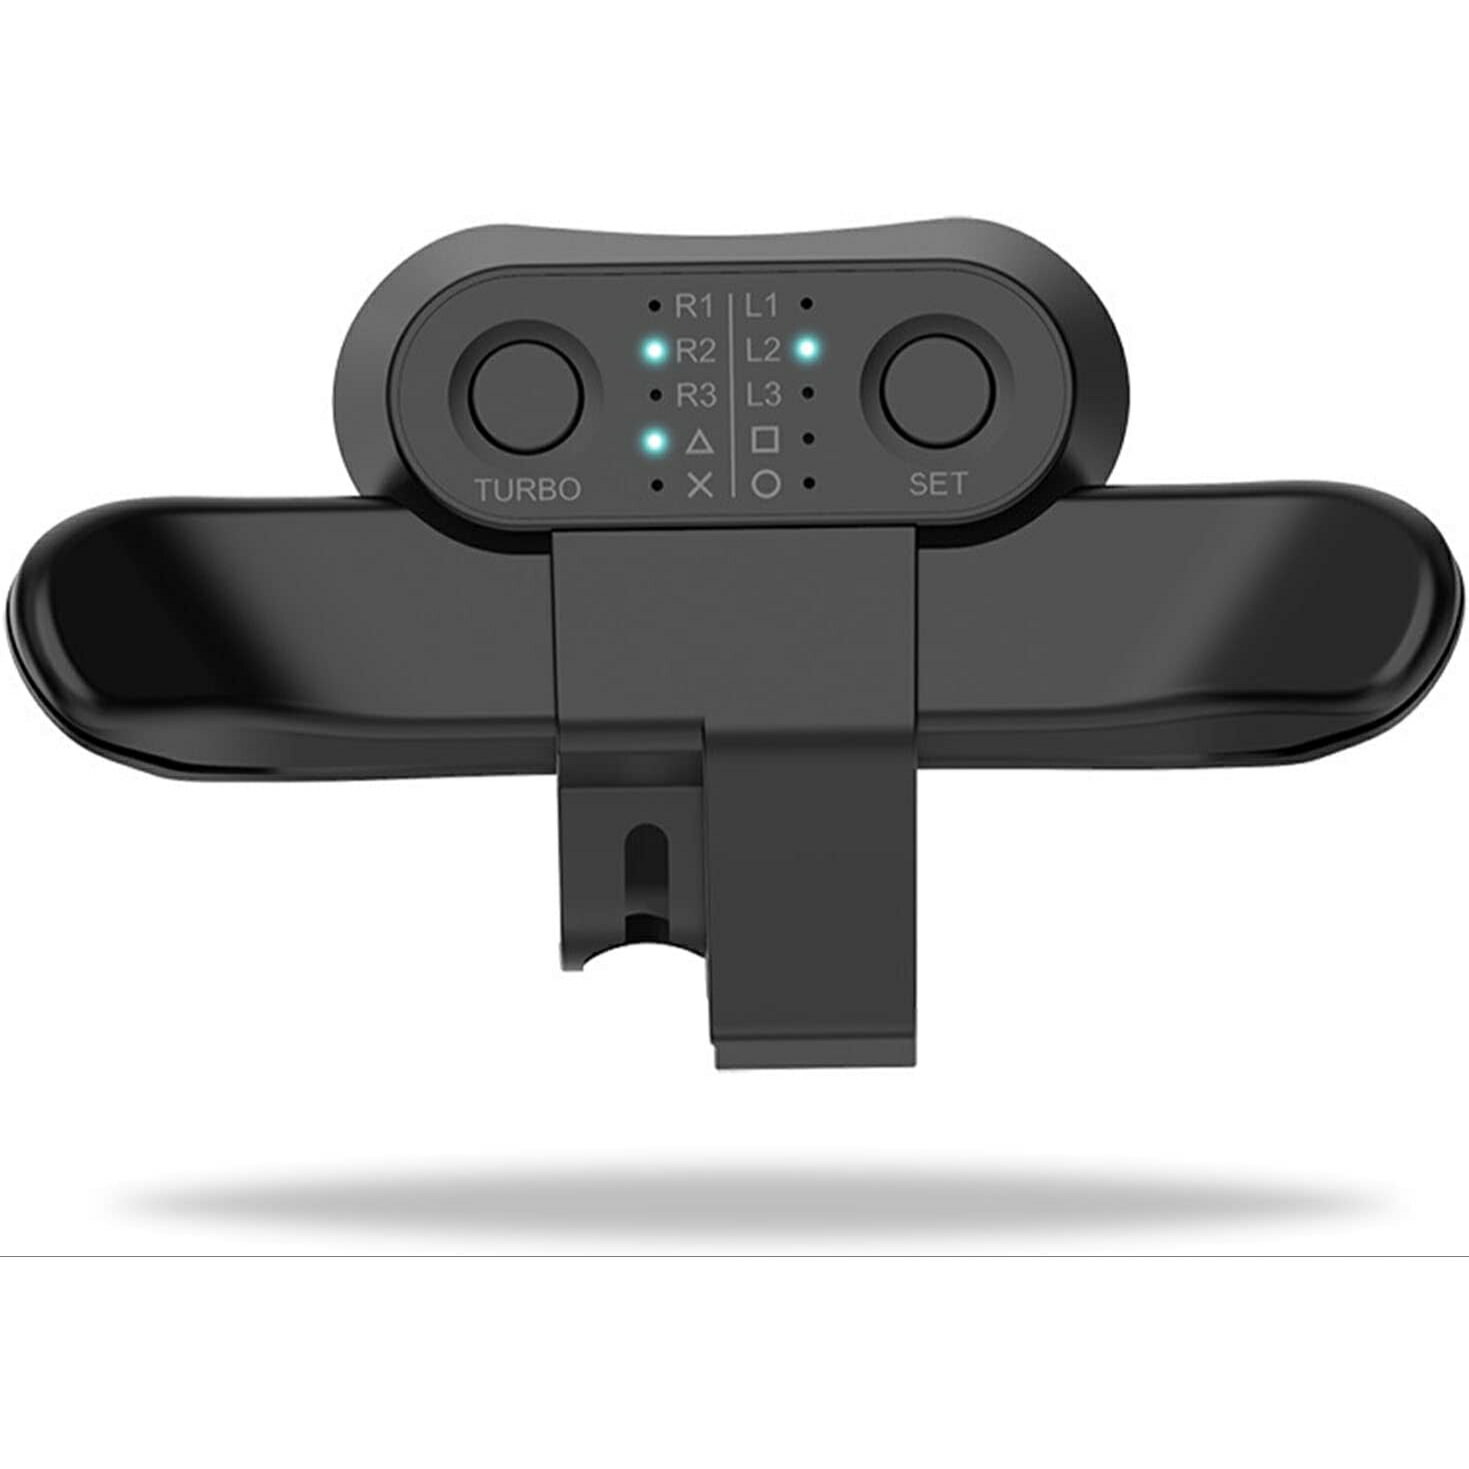 Chayoo PS4 背面ボタンアタッチメント 発売 簡単設定 TURBO 機能連射 ターボ 機能ボタンのマッピング DUALSHOCK4 背面パドル PlayStation 4 Slim Proコントローラー用 背面ボタン 日本語取扱説明書付